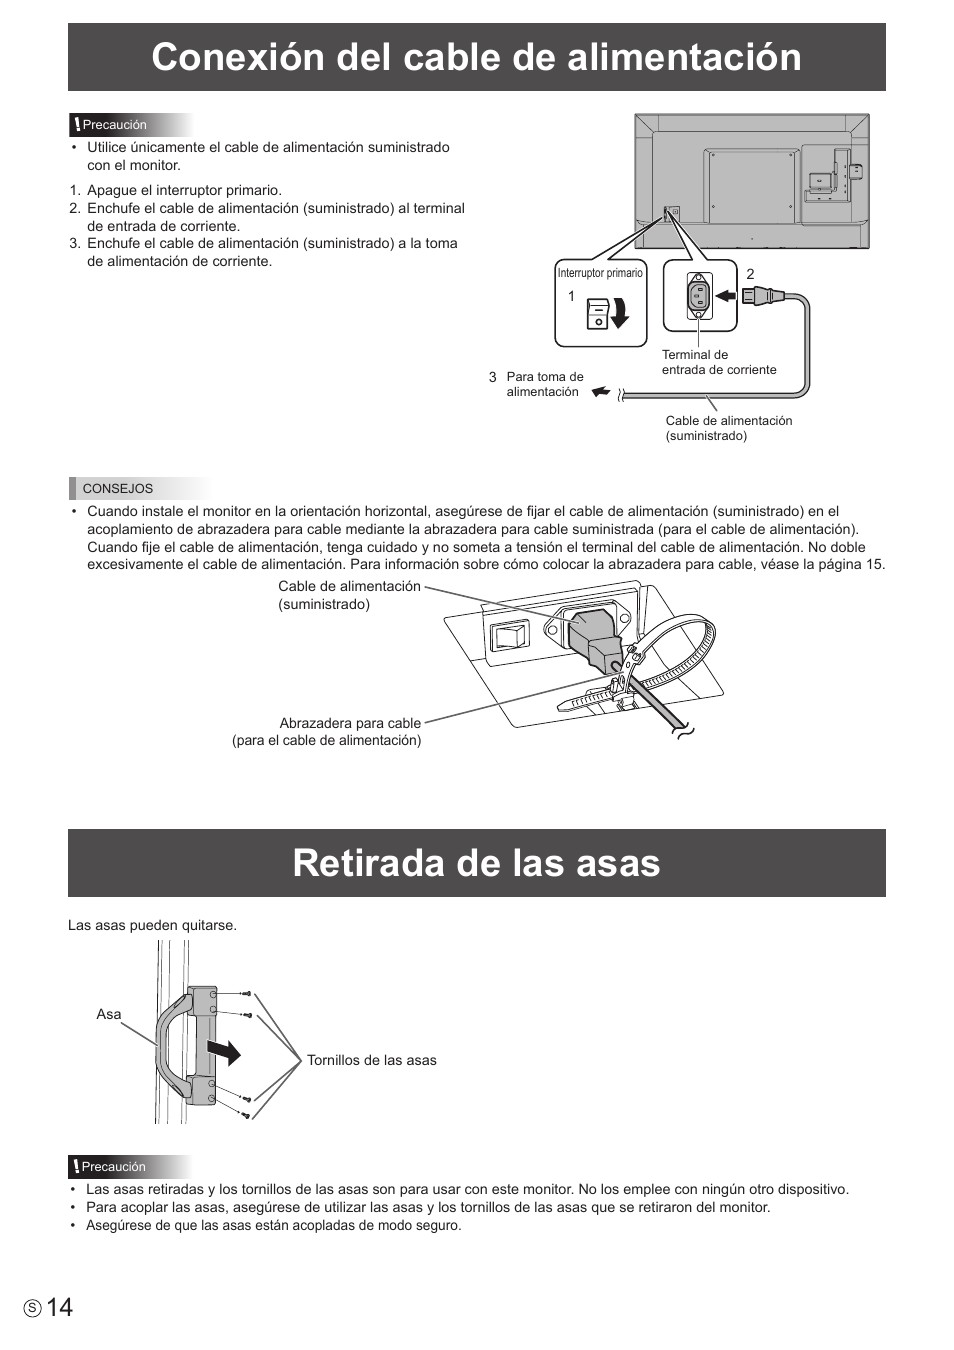 Conexión del cable de alimentación, Retirada de las asas | Sharp PN-H801 Manual del usuario | Página 14 / 53